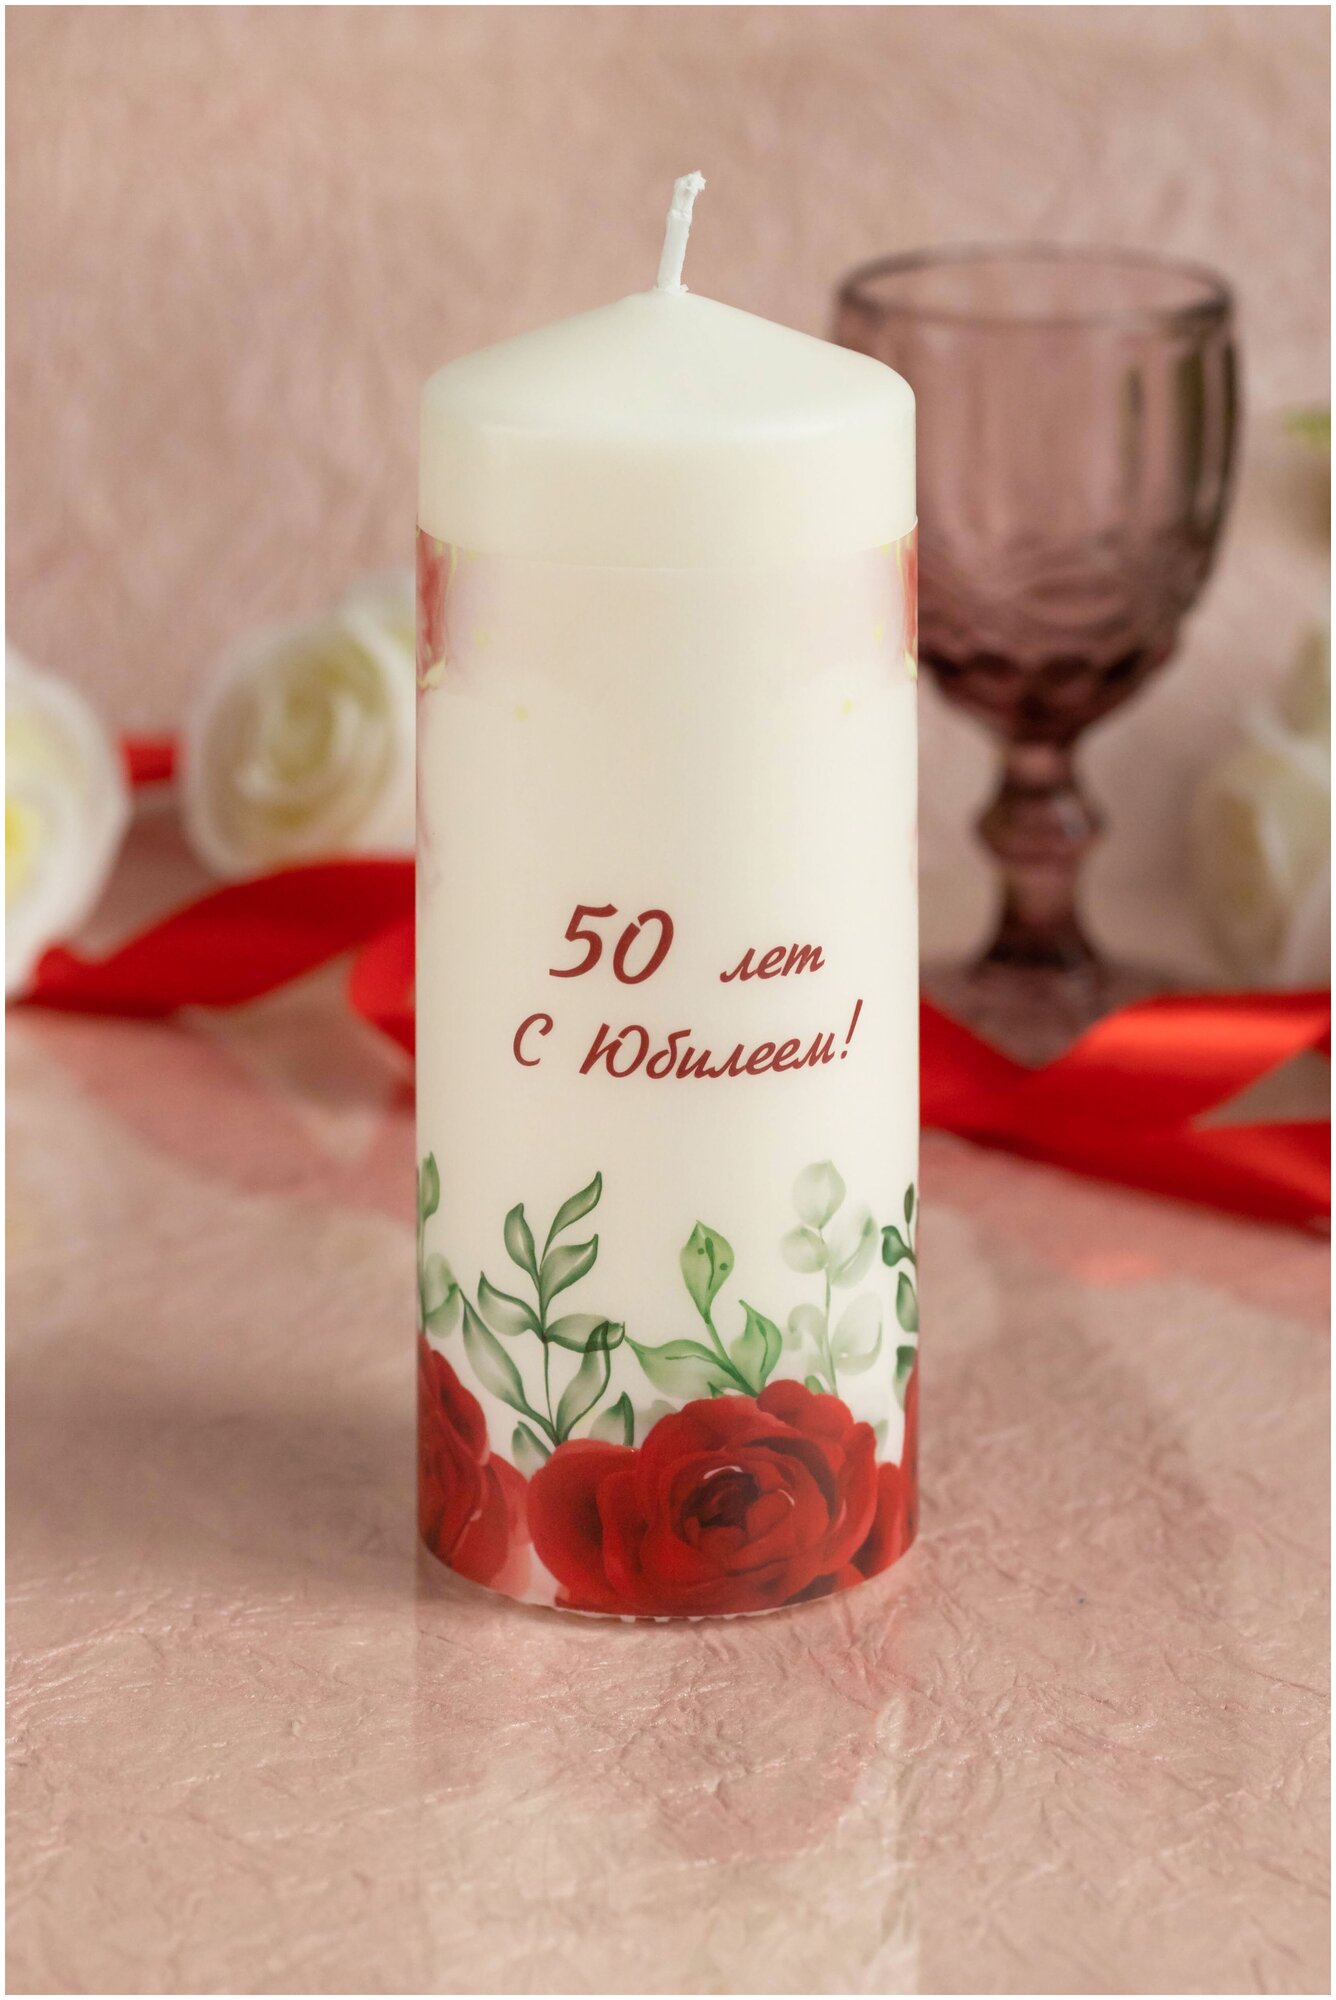 Большая свеча на юбилей 50 лет, день рождения и годовщину золотой свадьбы с красными розами и надписью